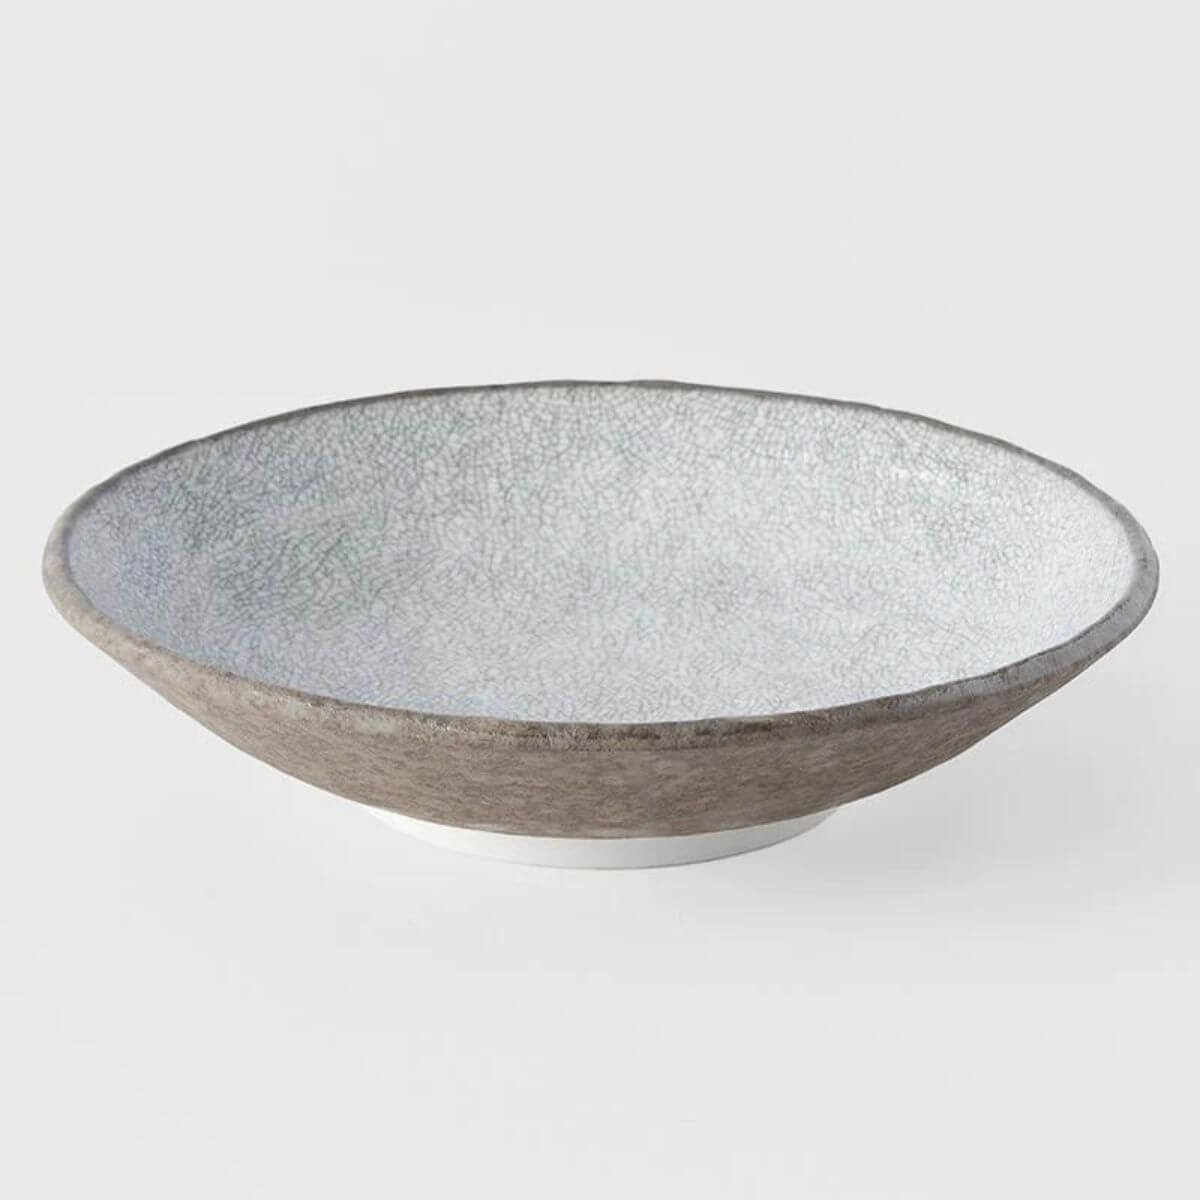 Naibu Crazed Grey Shallow Bowl Large 24cm